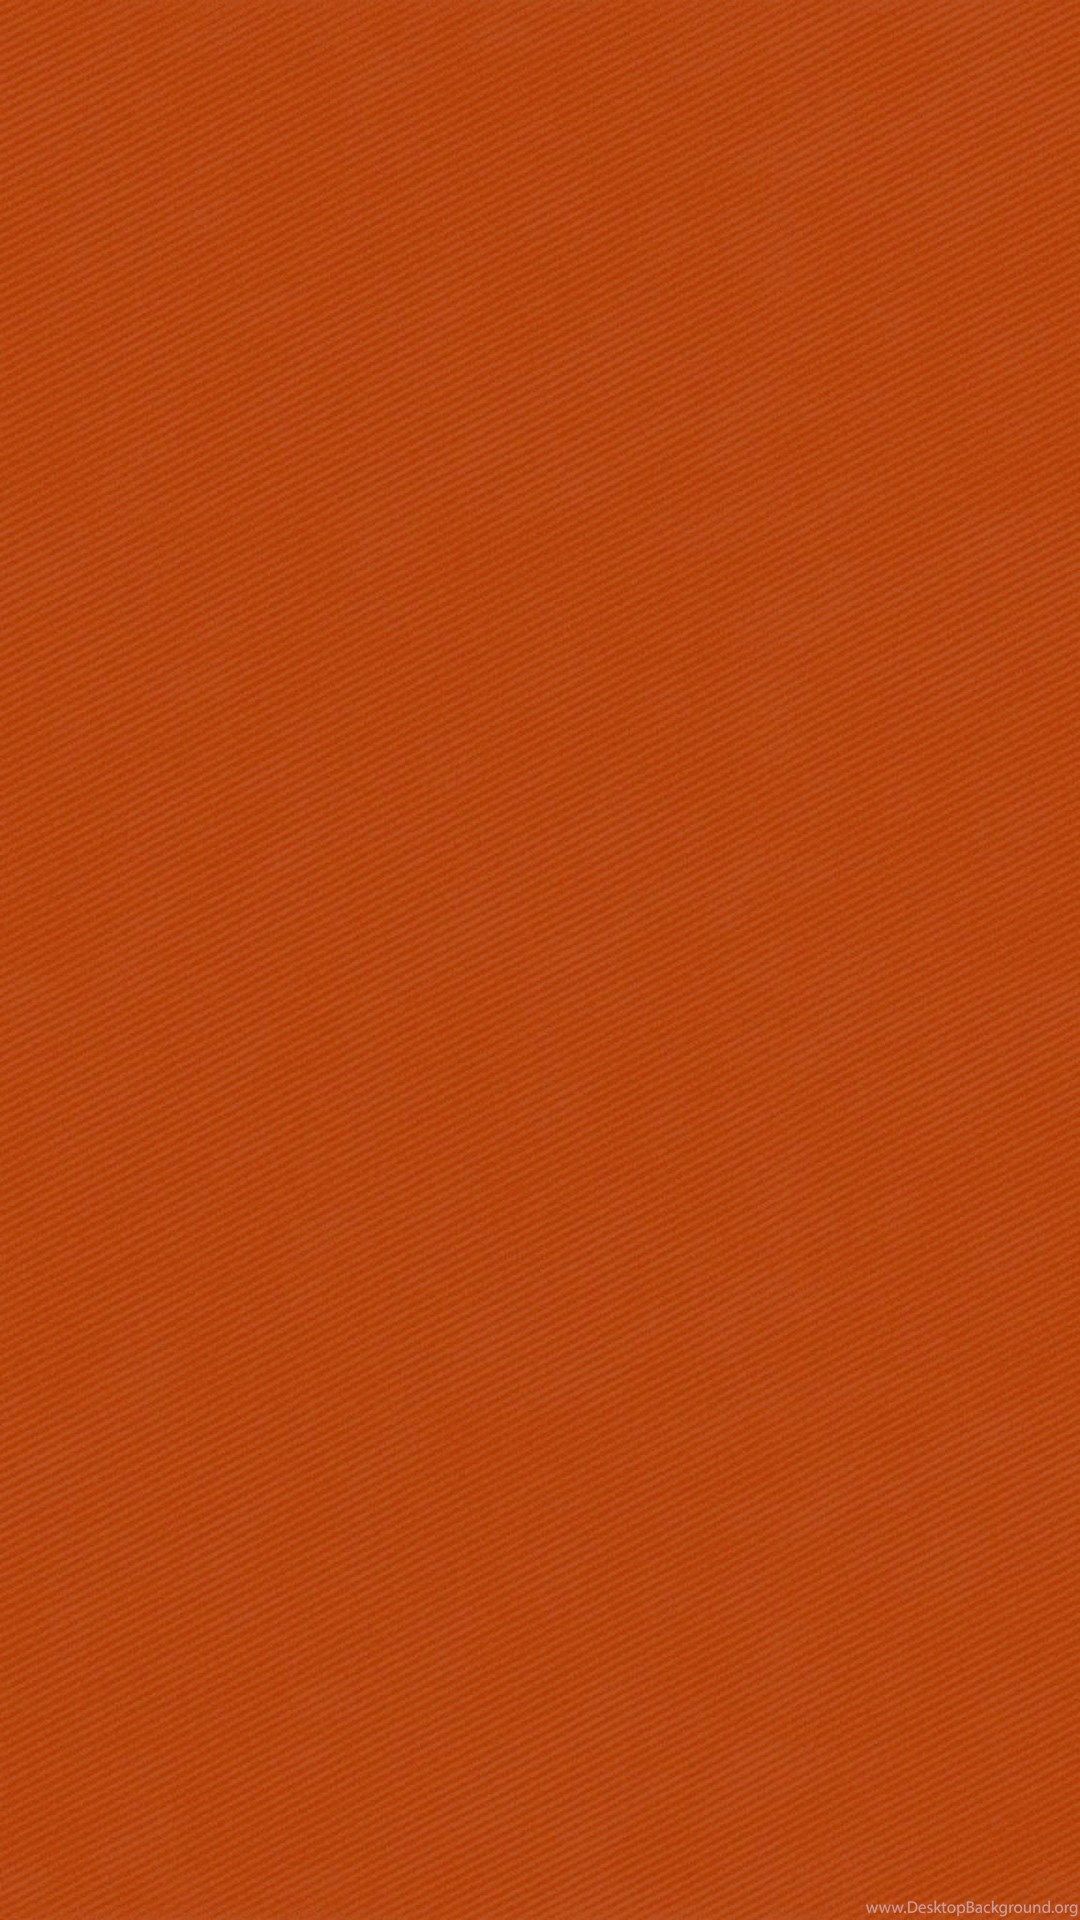 Hình nền Burnt Orange Wallpapers sẽ mang lại cho điện thoại của bạn sự ấn tượng mạnh mẽ và khác biệt hoàn toàn so với những hình nền thông thường. Tất cả những điều tuyệt vời đó chỉ có thể được trải nghiệm khi bạn bấm vào đây để xem những hình nền đầy phong cách và sáng tạo này.